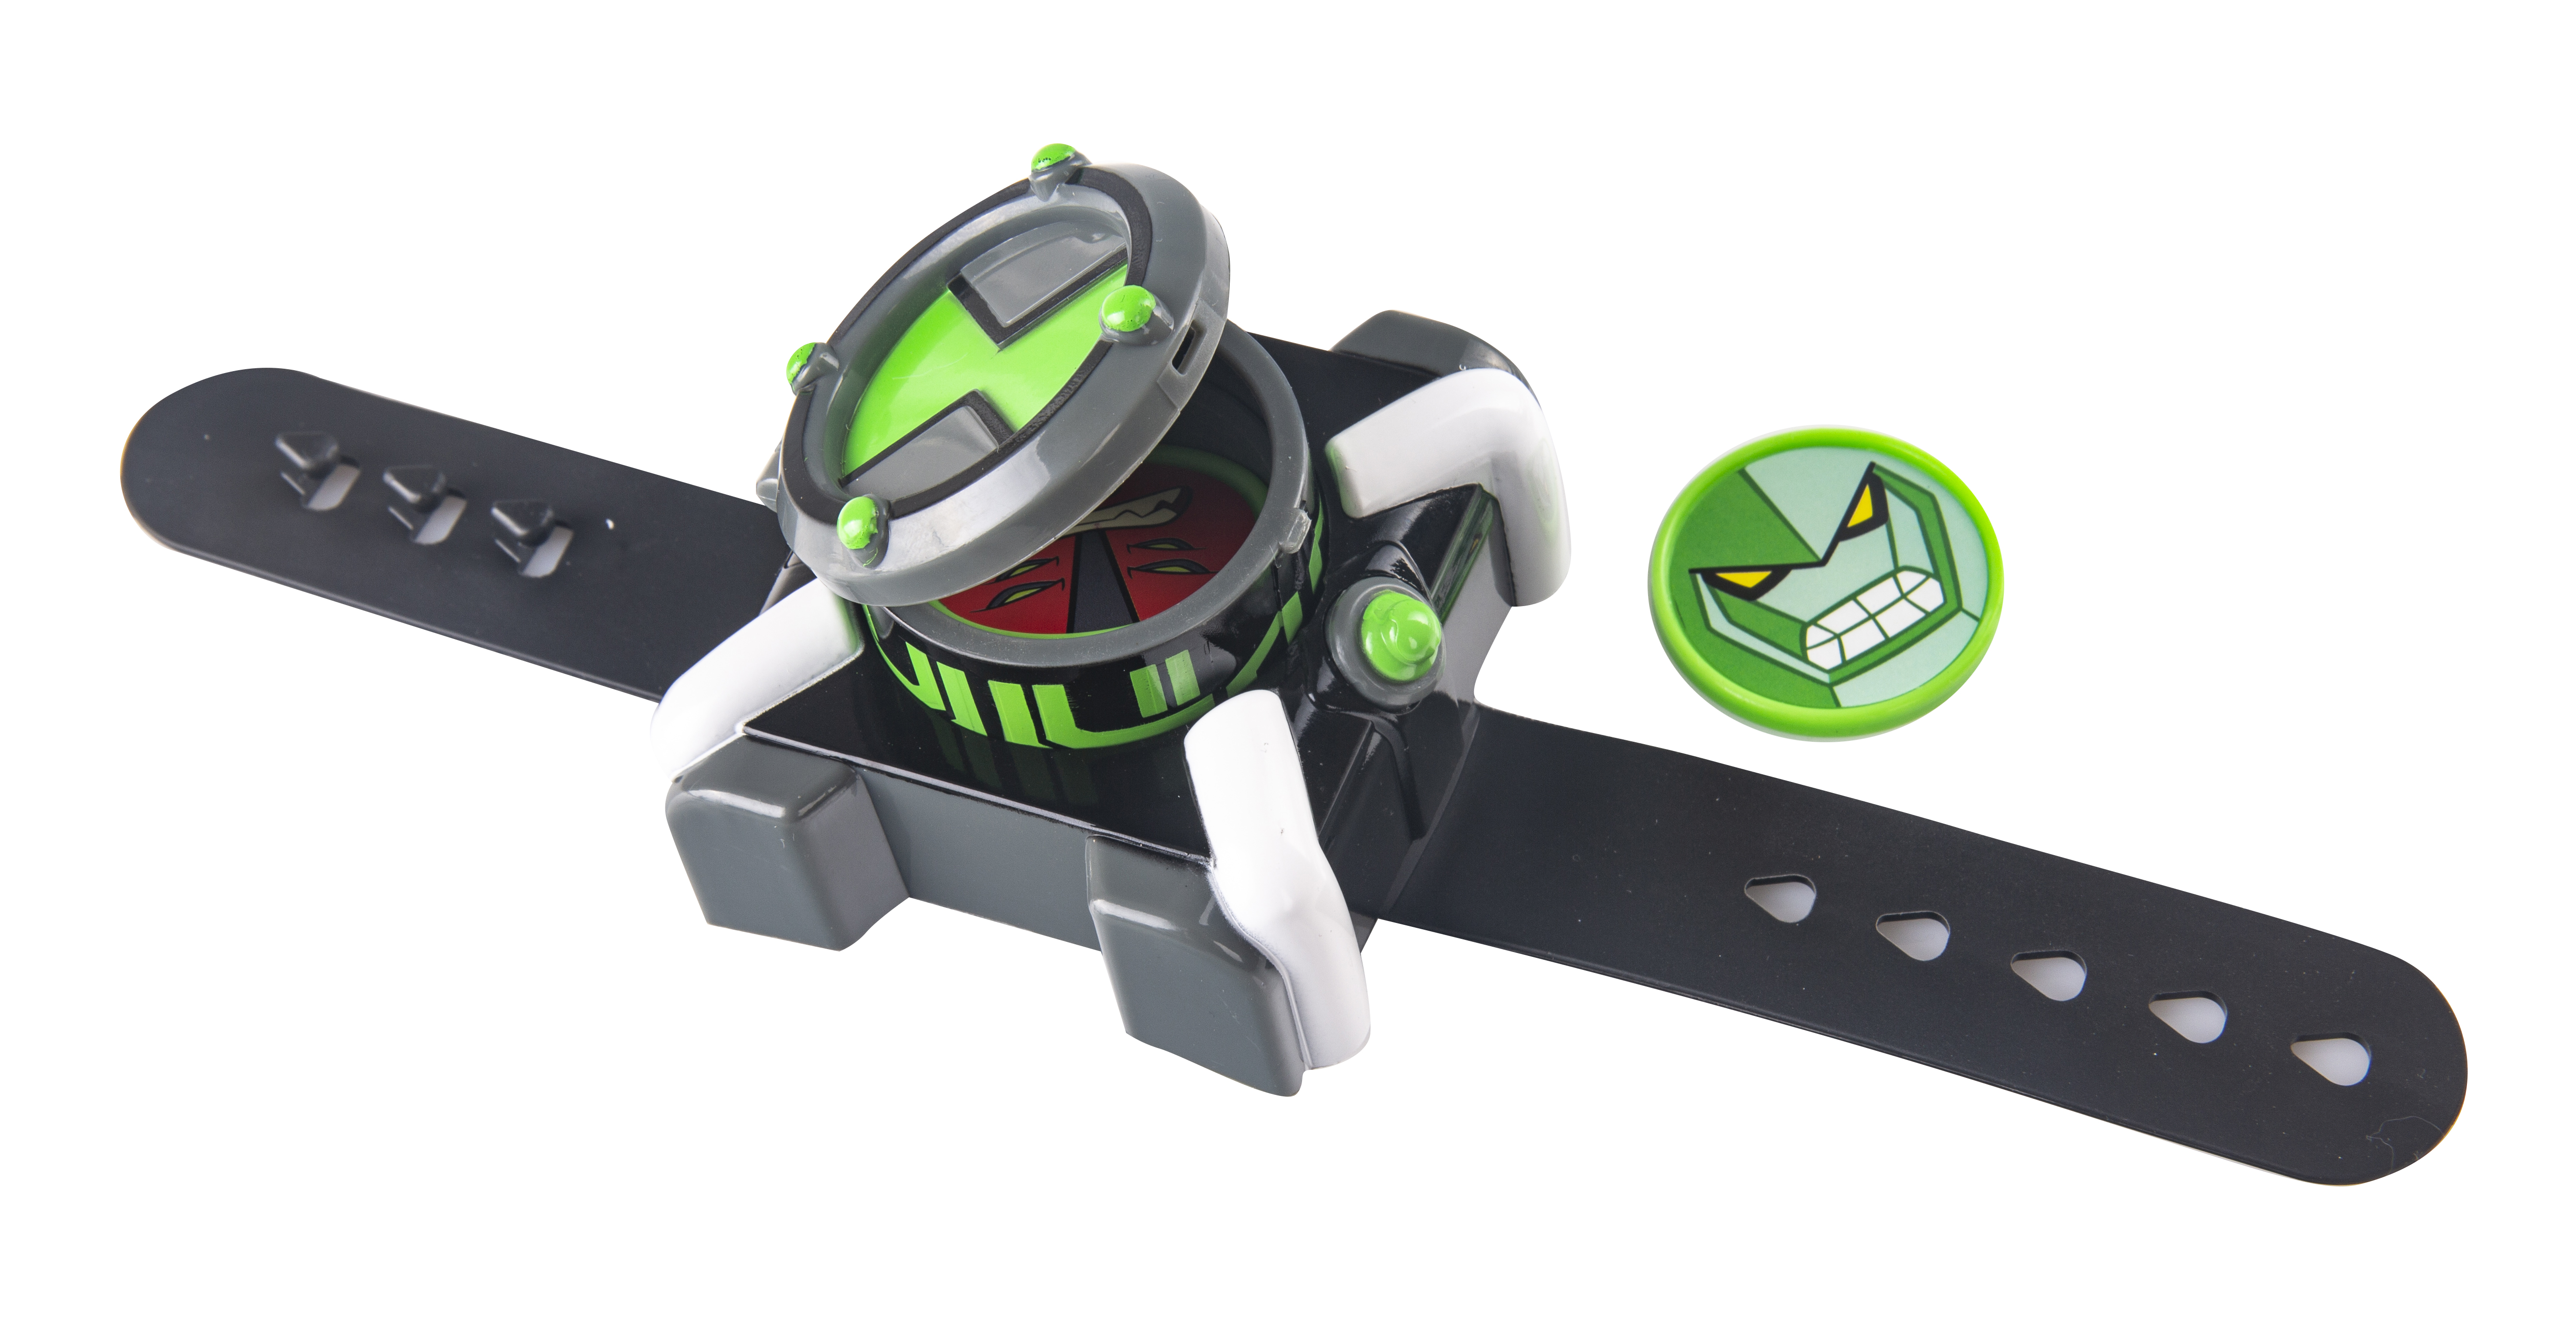 Ben-10 Игровой набор часы Омнитрикс дискомет + 3 мини-фигурки 76938 - фото 3